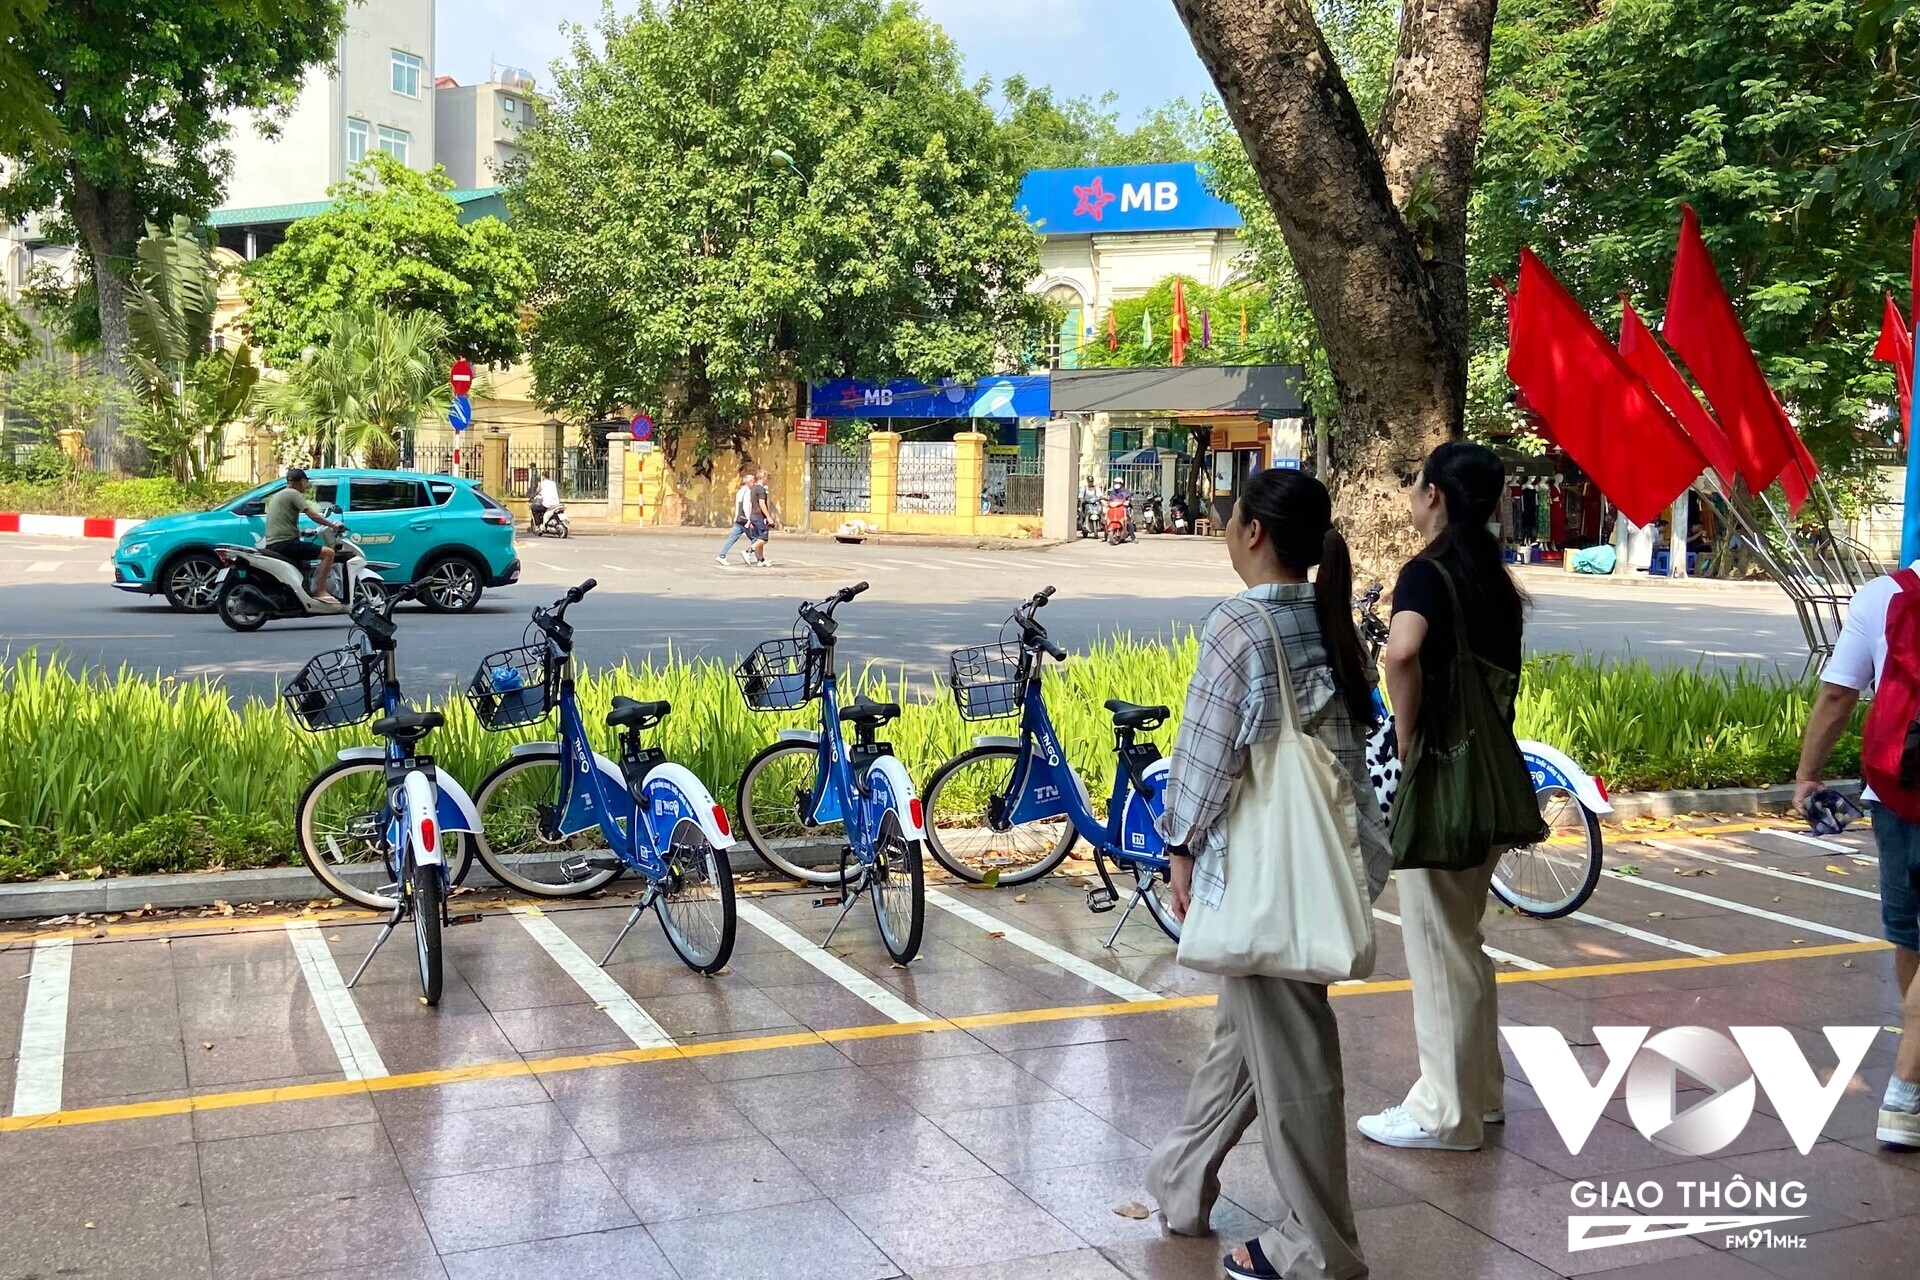 Nhiều người khá ngạc nhiên với các trạm xe đạp công cộng cho thuê lần đầu được triển khai ở Thủ đô